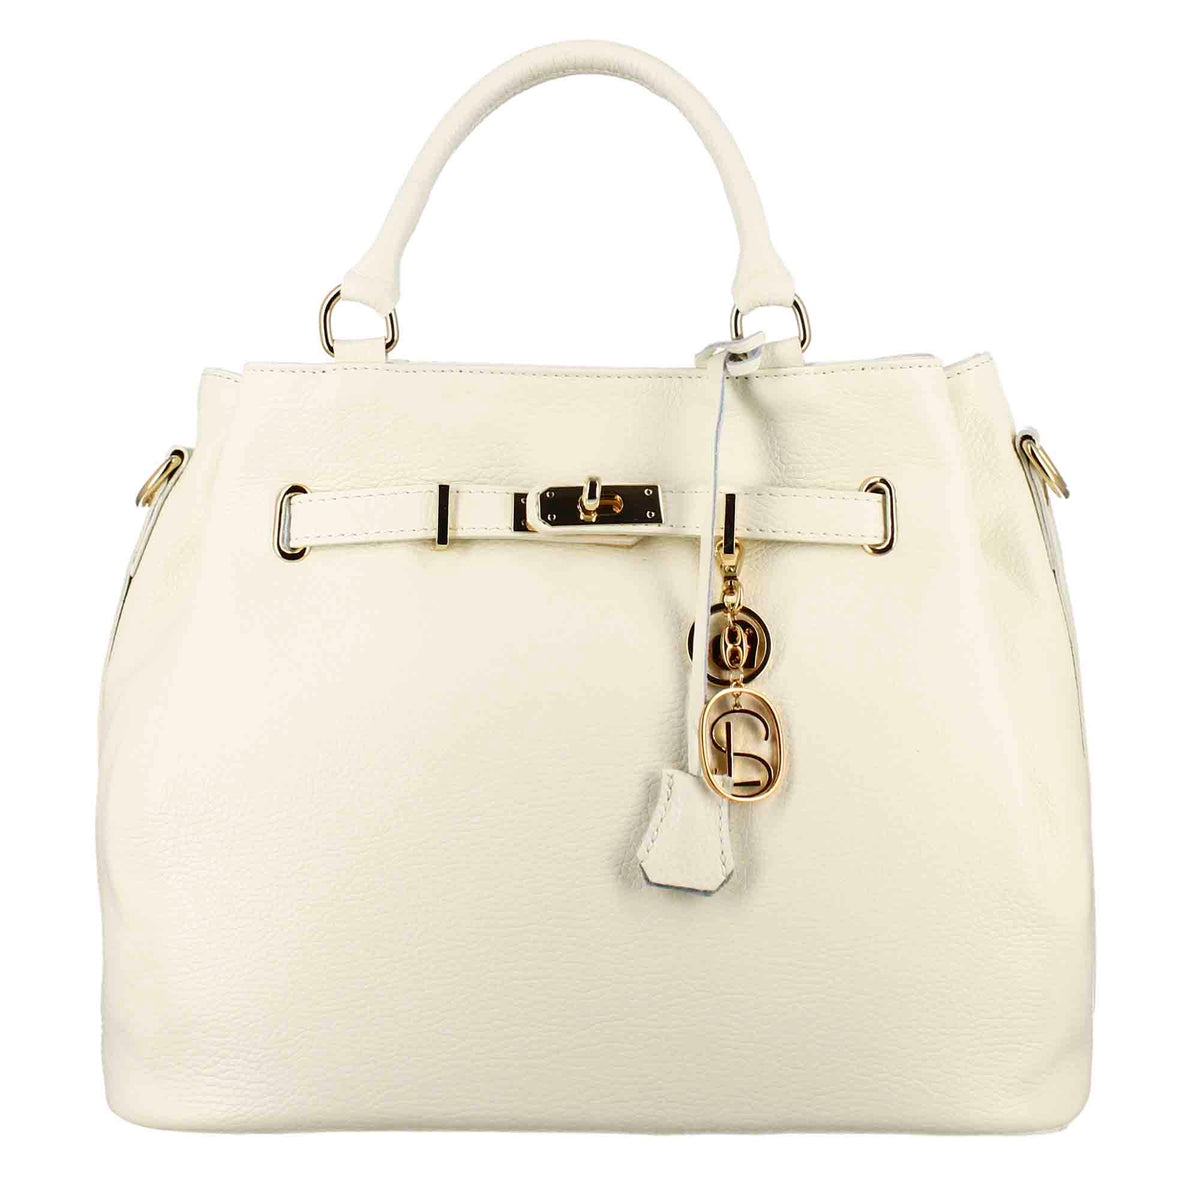 Frida leather handbag with removable white shoulder strap